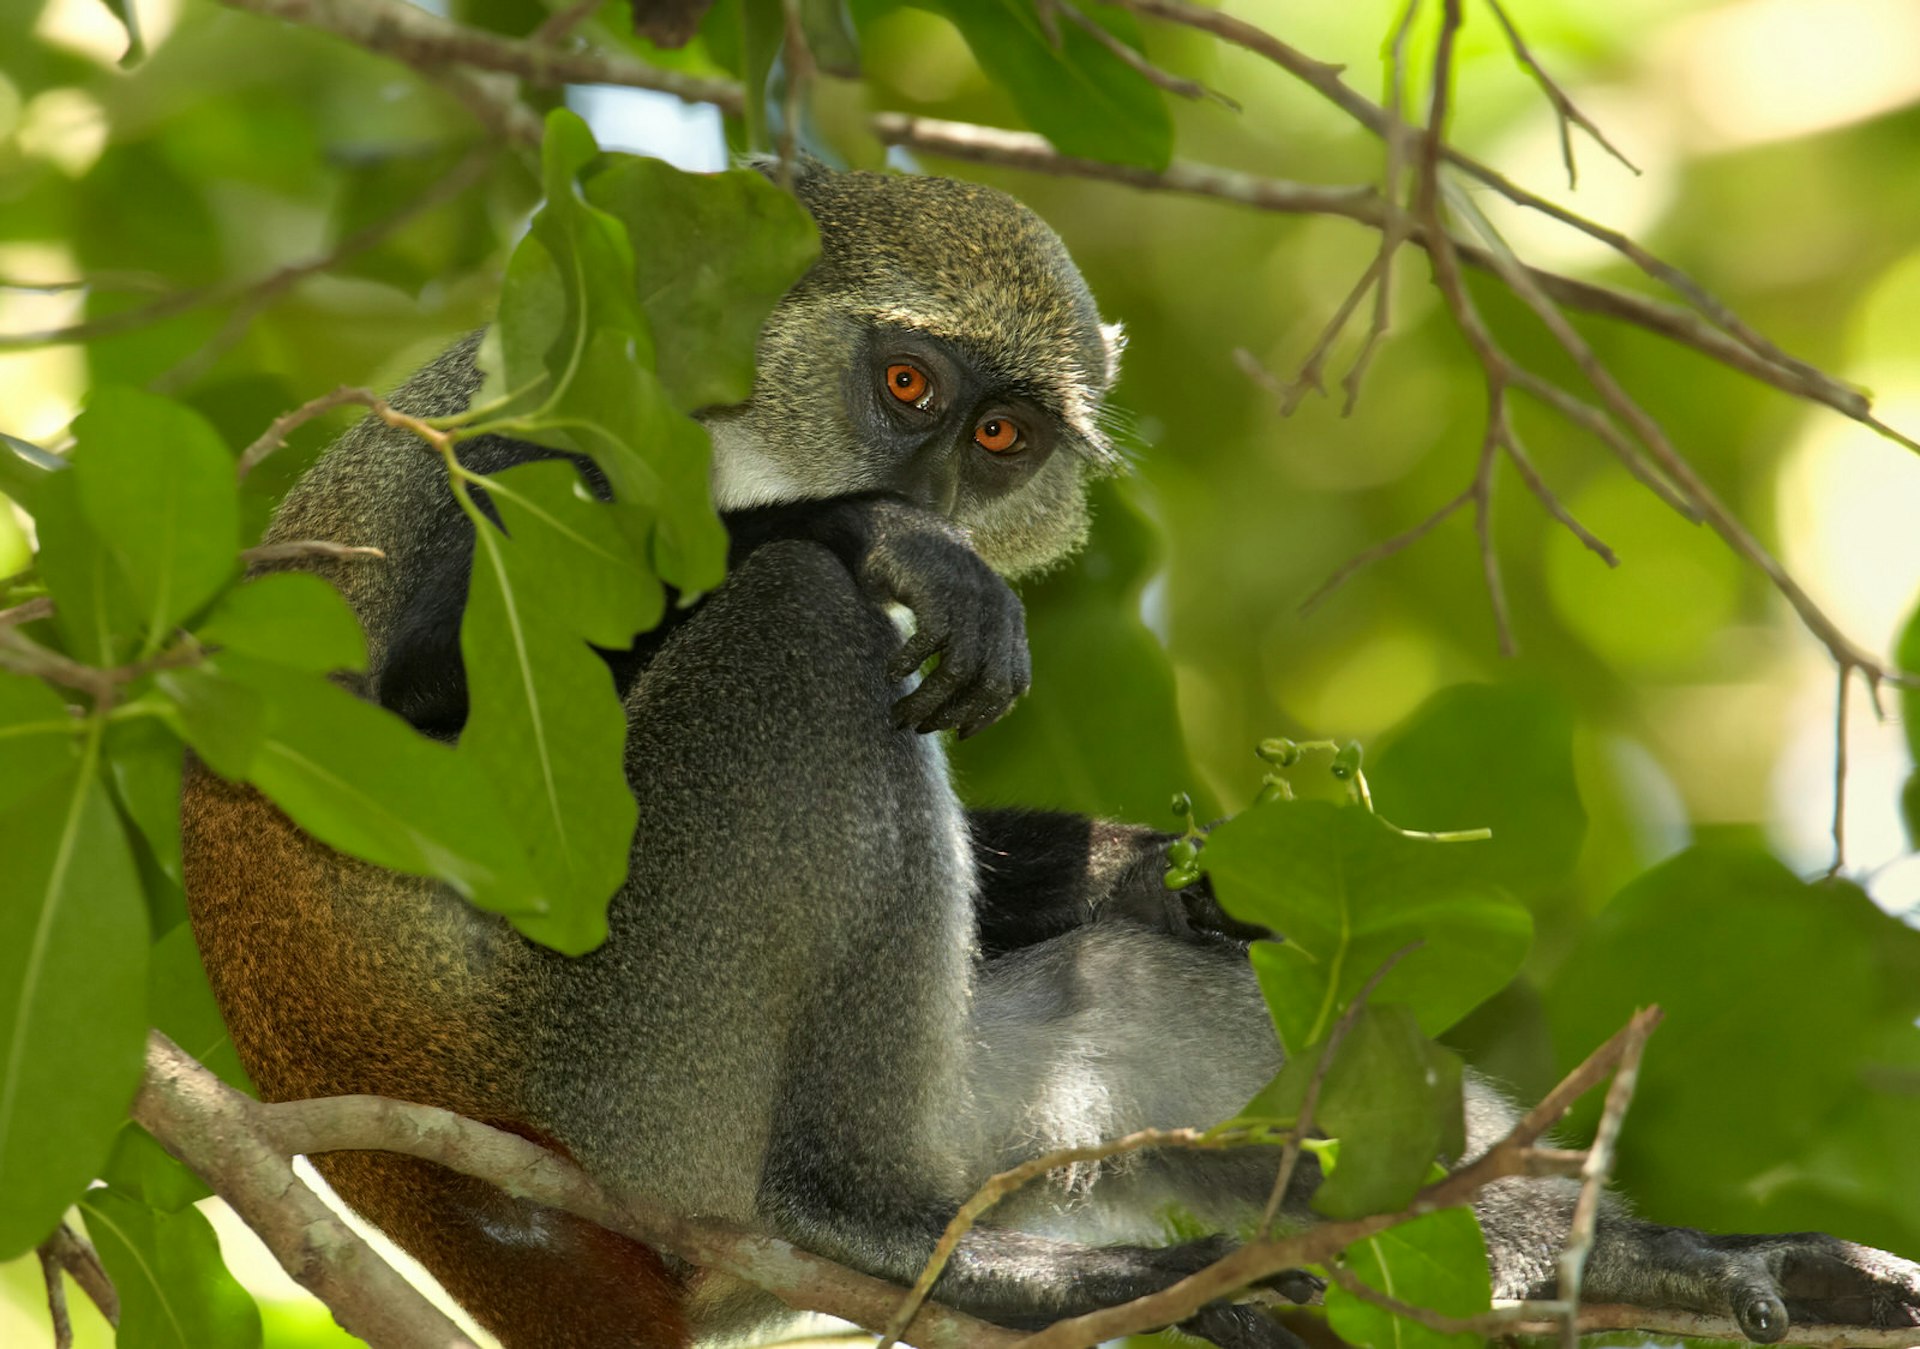 Omgiven av frodiga löv gömmer sig en Sykes apa.  Dess ögon är en lysande orange med svarta pupiller, medan pälsen är kort och tjock - mestadels grå, men med en ingefära nyans på ryggen.  Den har vit päls på axlarna och på huvudet.